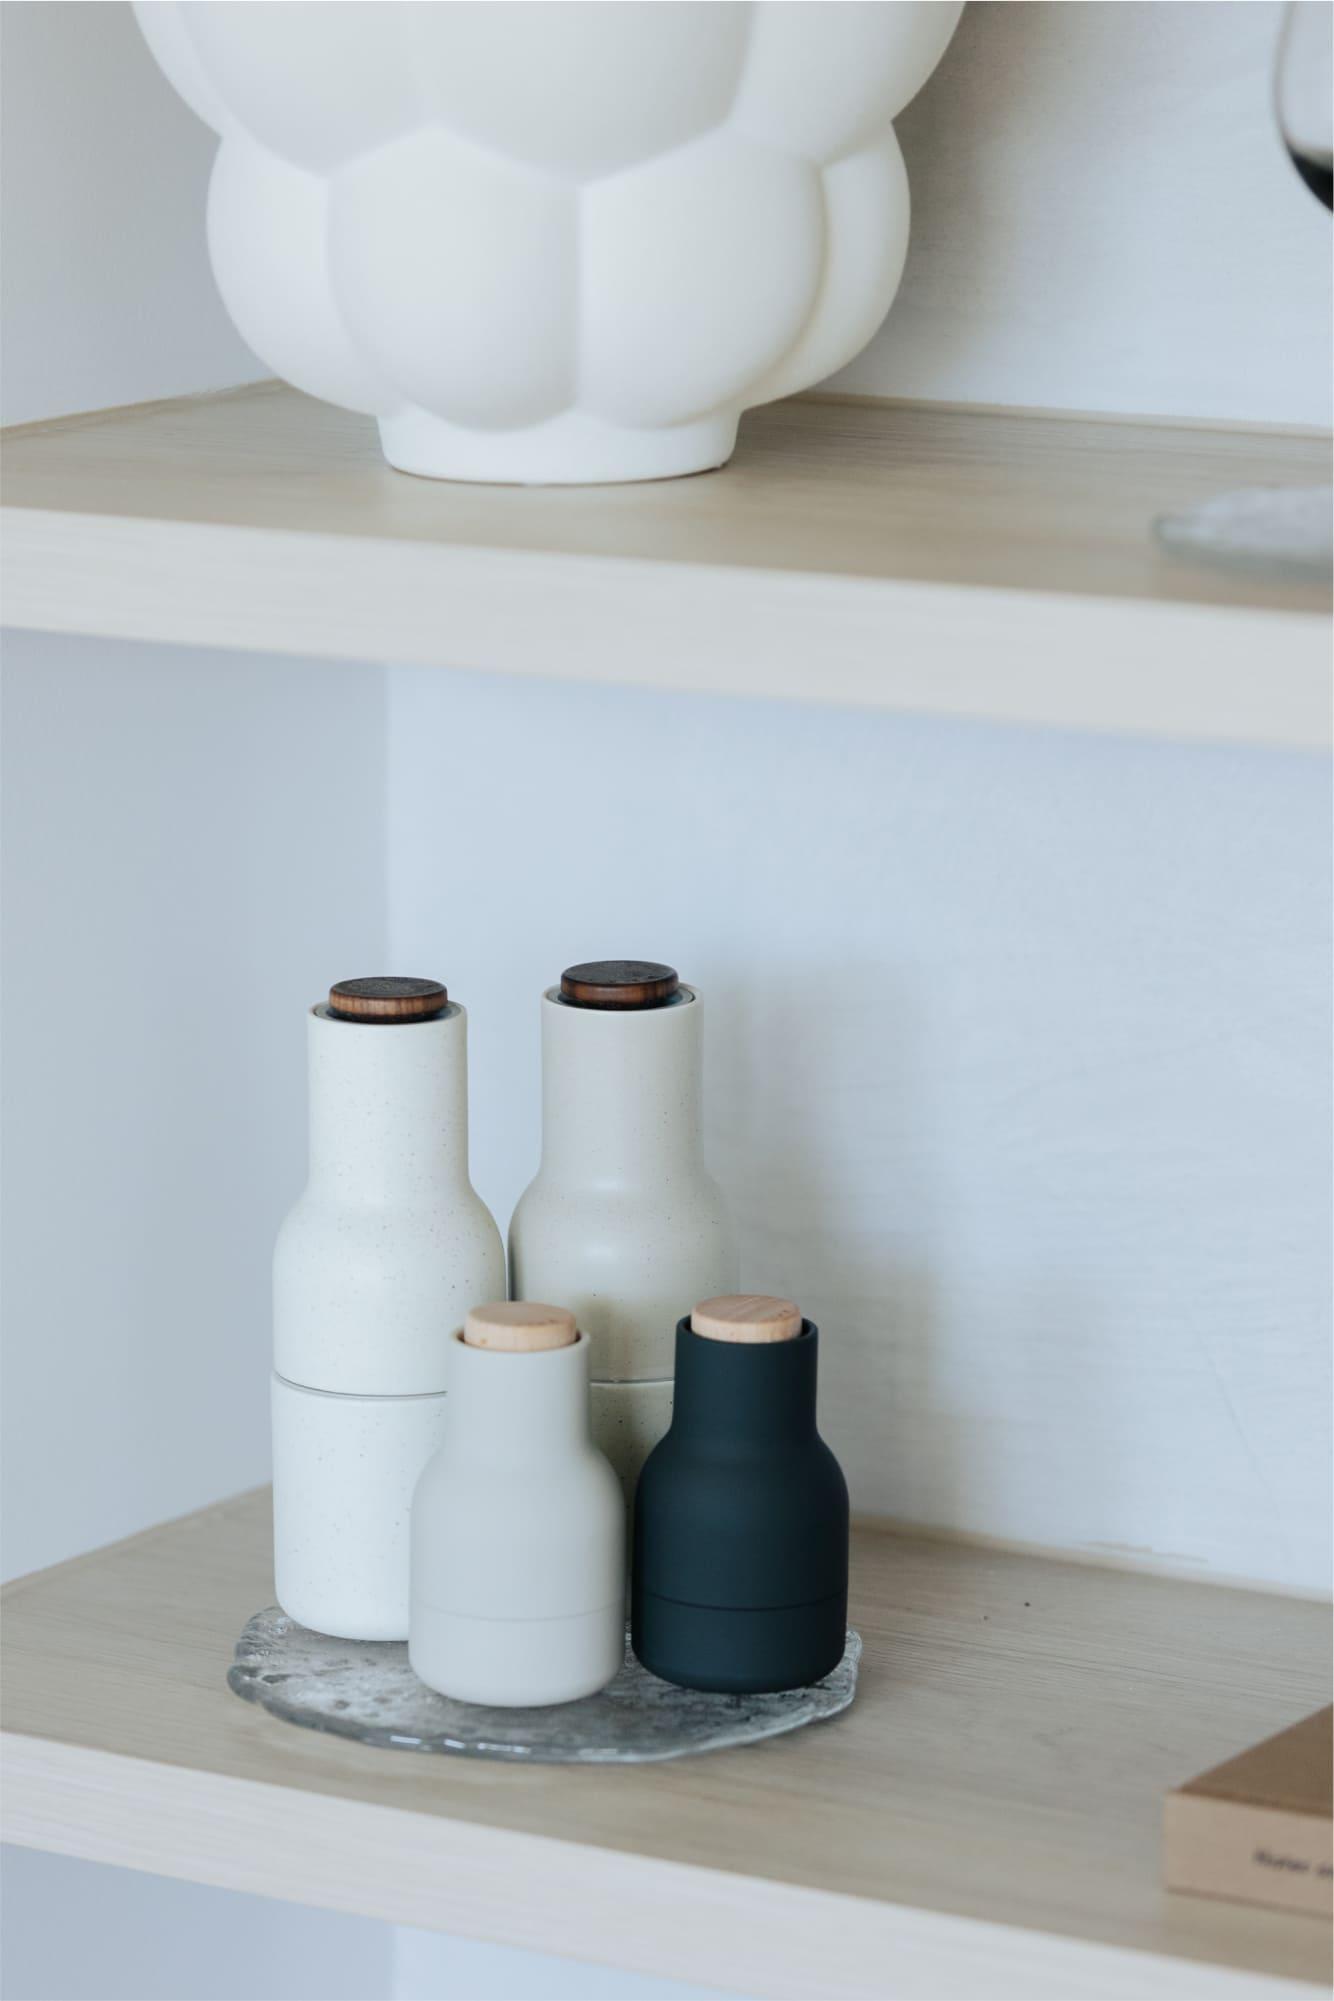 Designstuff Audo salt and pepper grinders displayed on shelf